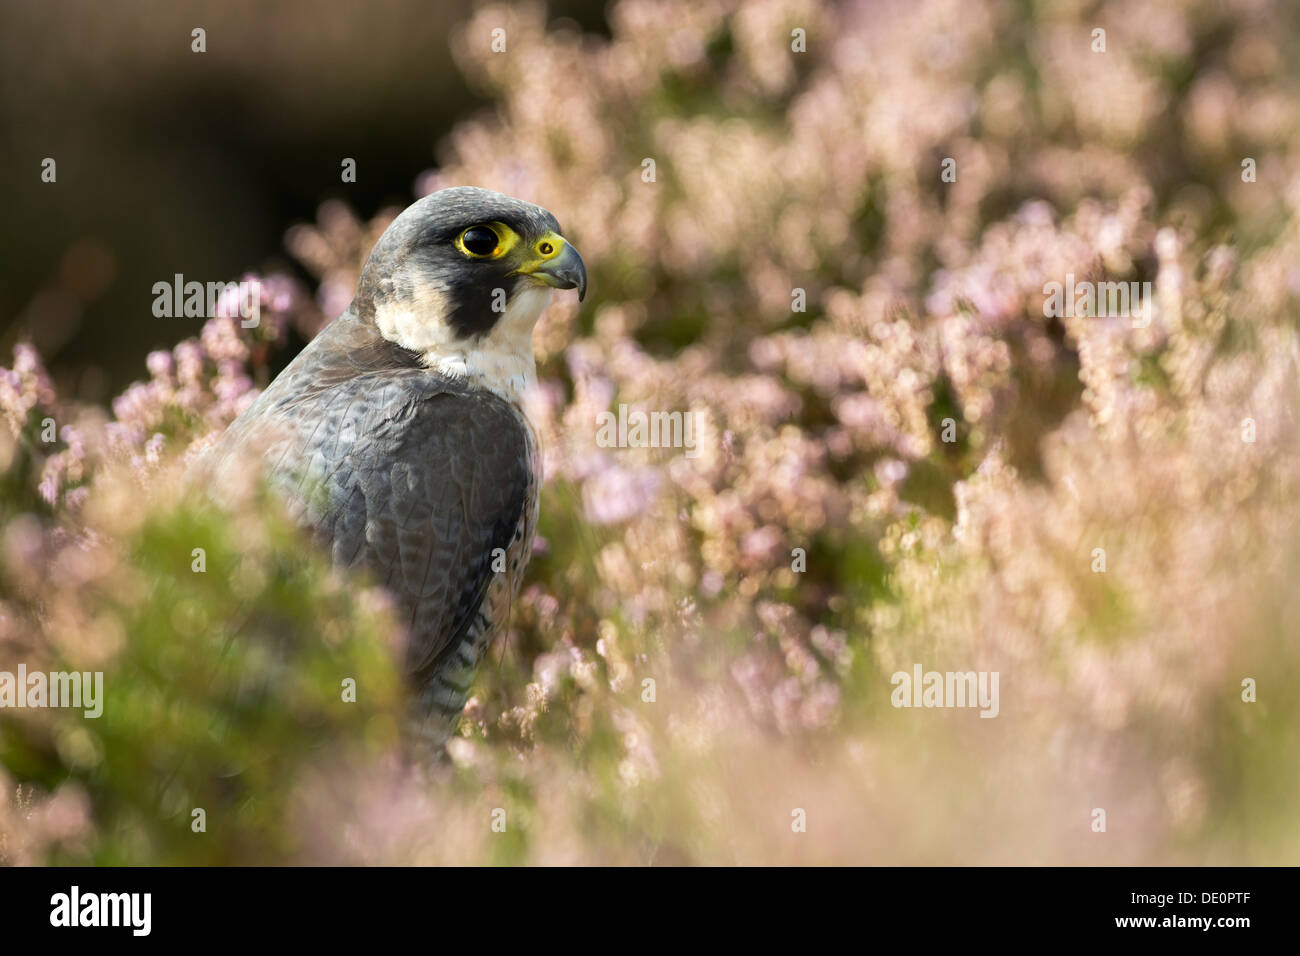 Falco pellegrino, Falco peregrinus, appoggiato in heather sulla brughiera, nello Yorkshire, Regno Unito. Captive Bird. Foto Stock